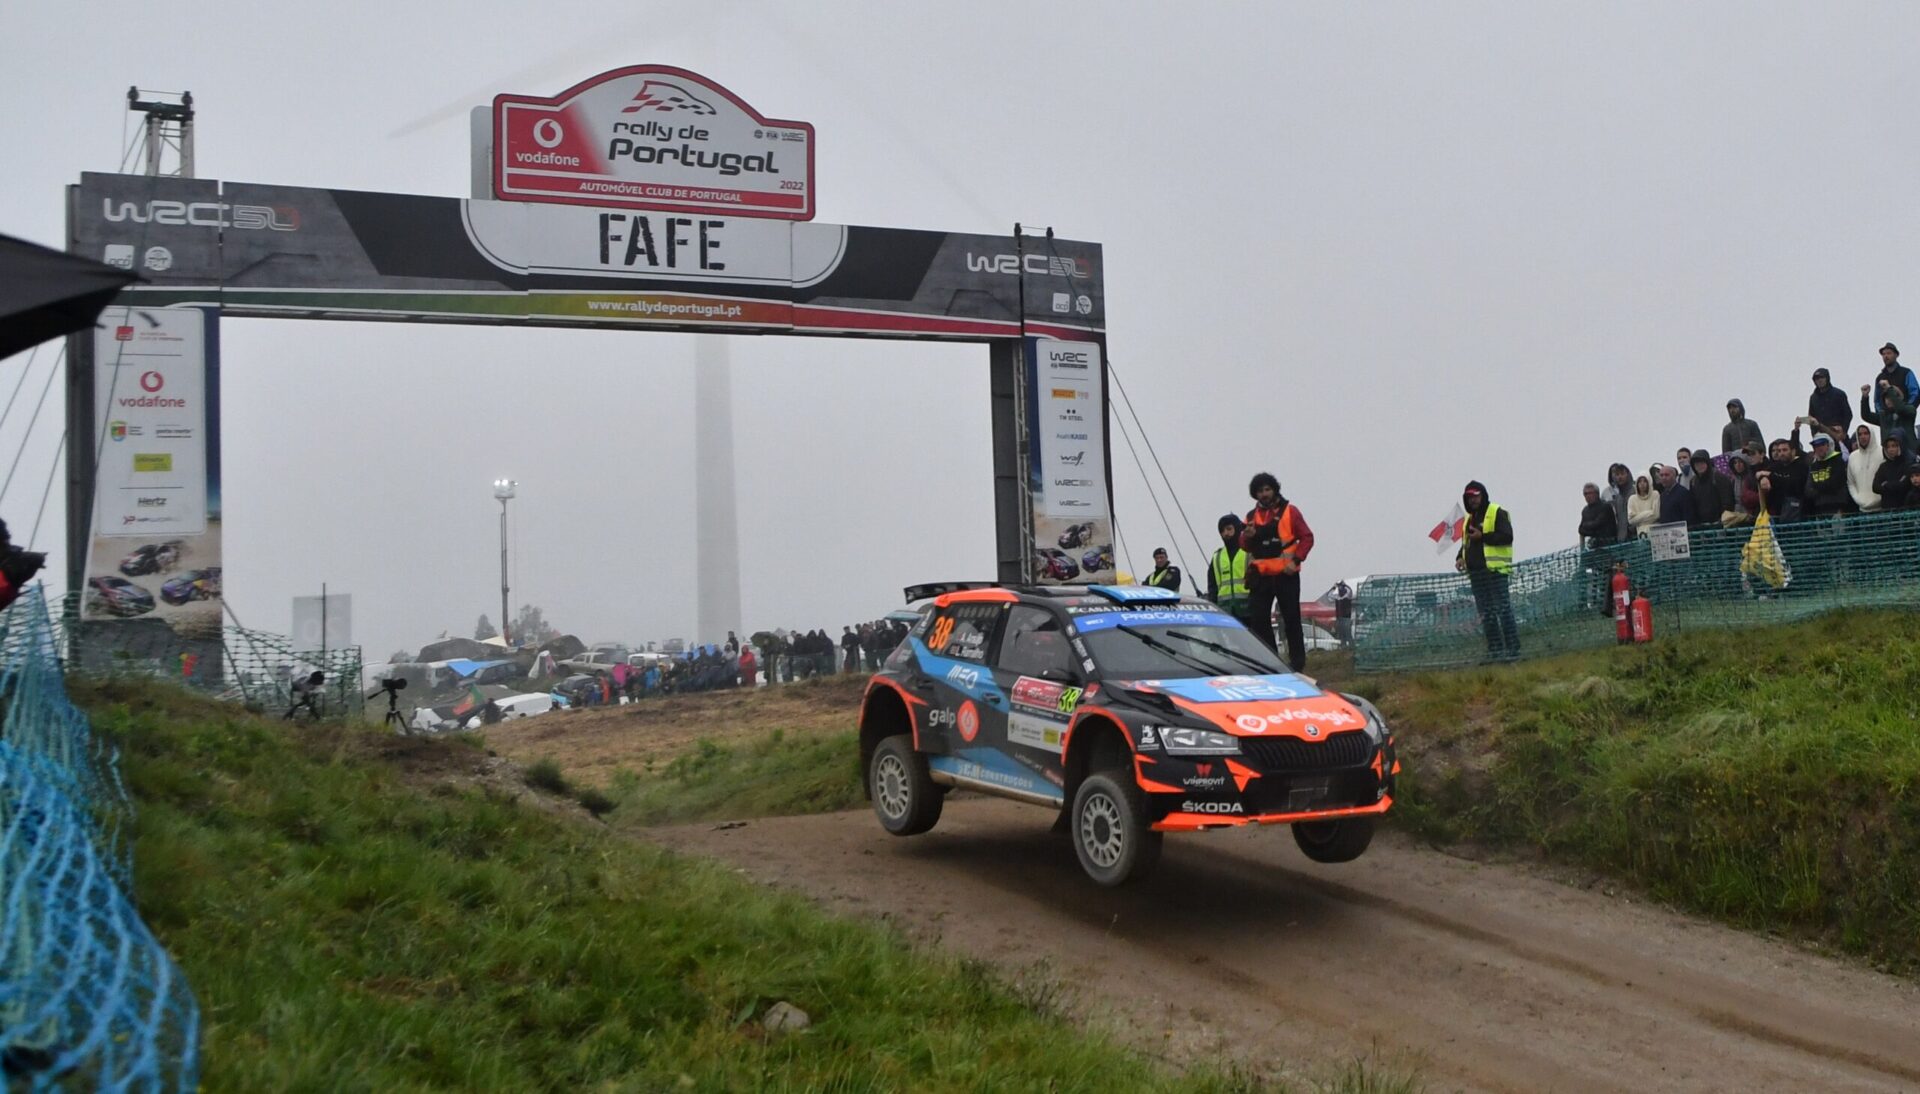 Suninen entrega vitória no WRC2 a Rossel e Armindo é o melhor português